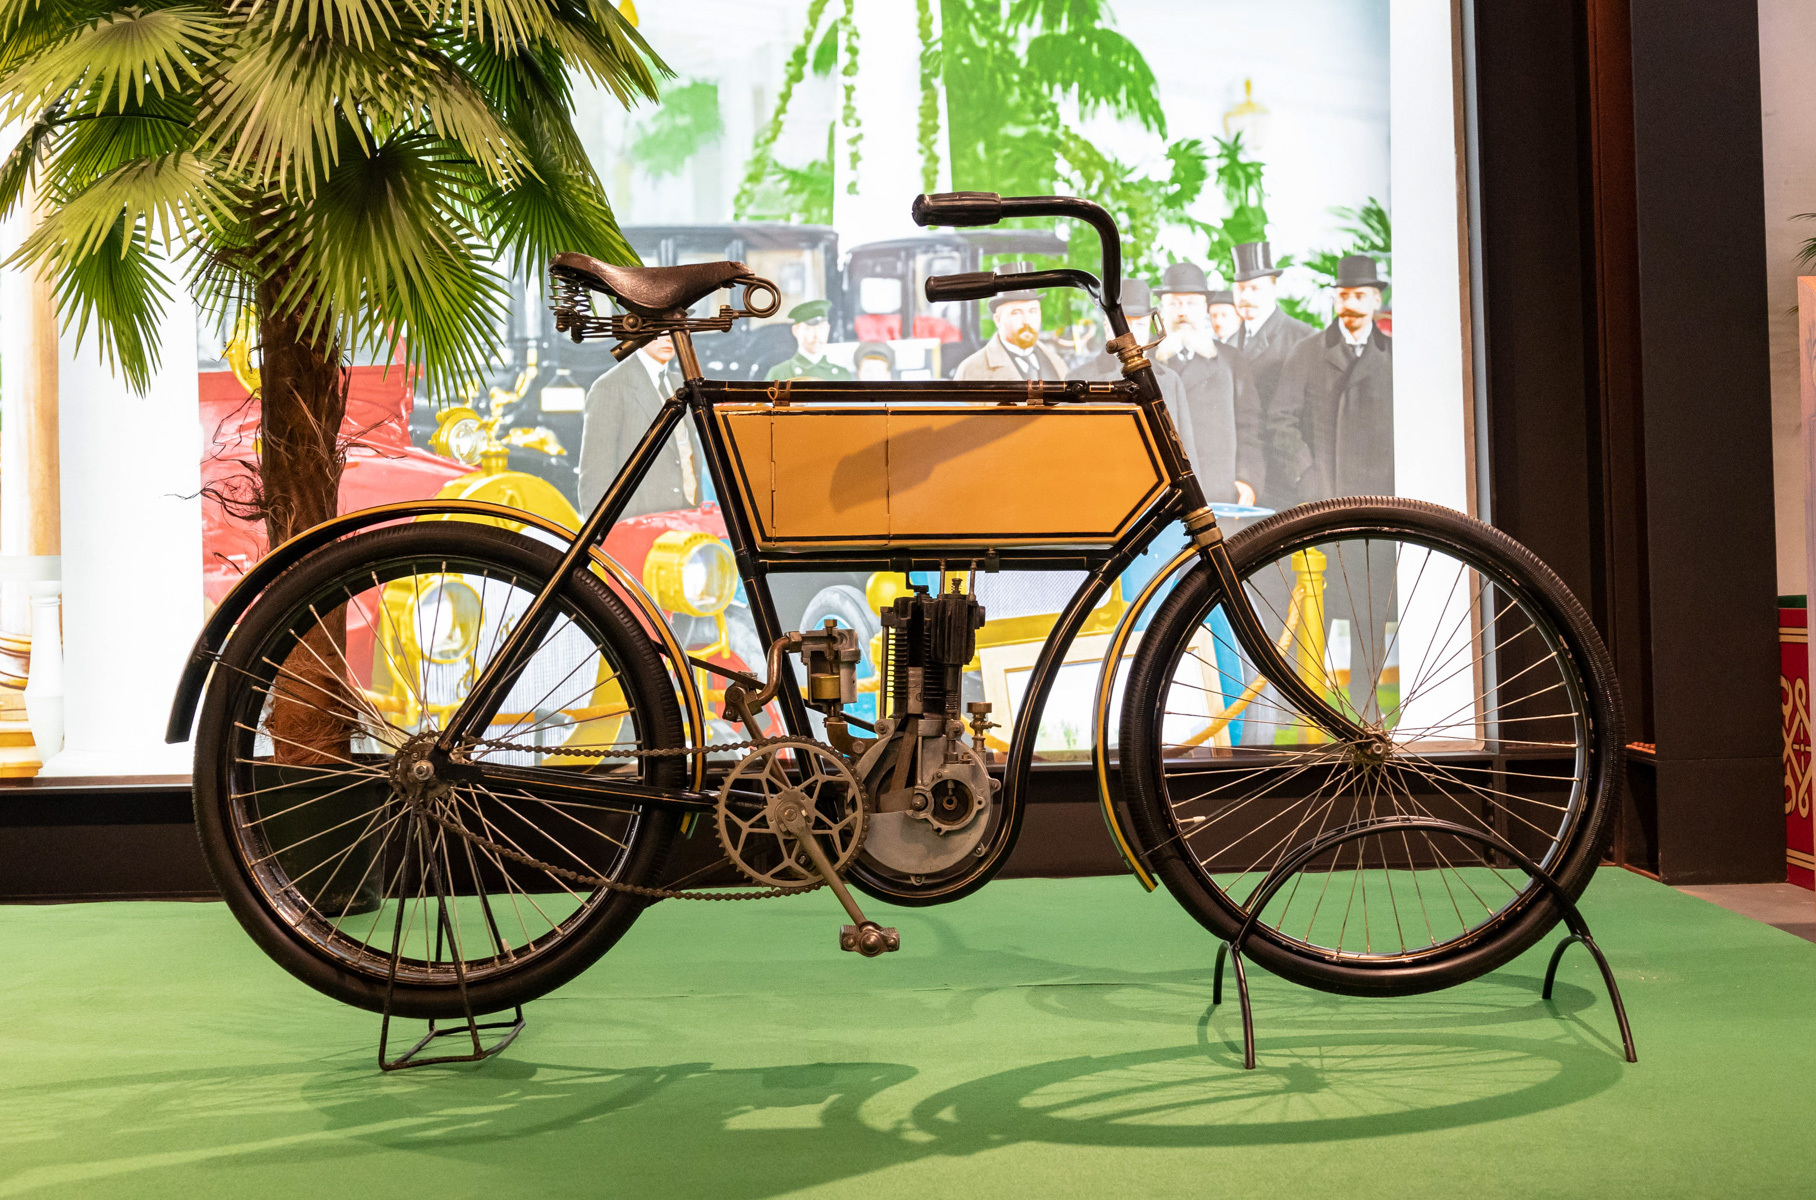 Первый российский мотоцикл называется «Россия». Мотоциклы выпускались на фабрике Александра Александровича Лейтнера. Сама фабрика была основана в 1886 году в Риге, а модели «Россия» с немецким четырехтактным одноцилиндровым двигателем Fafnir выпускались с 1903 по 1907 год.